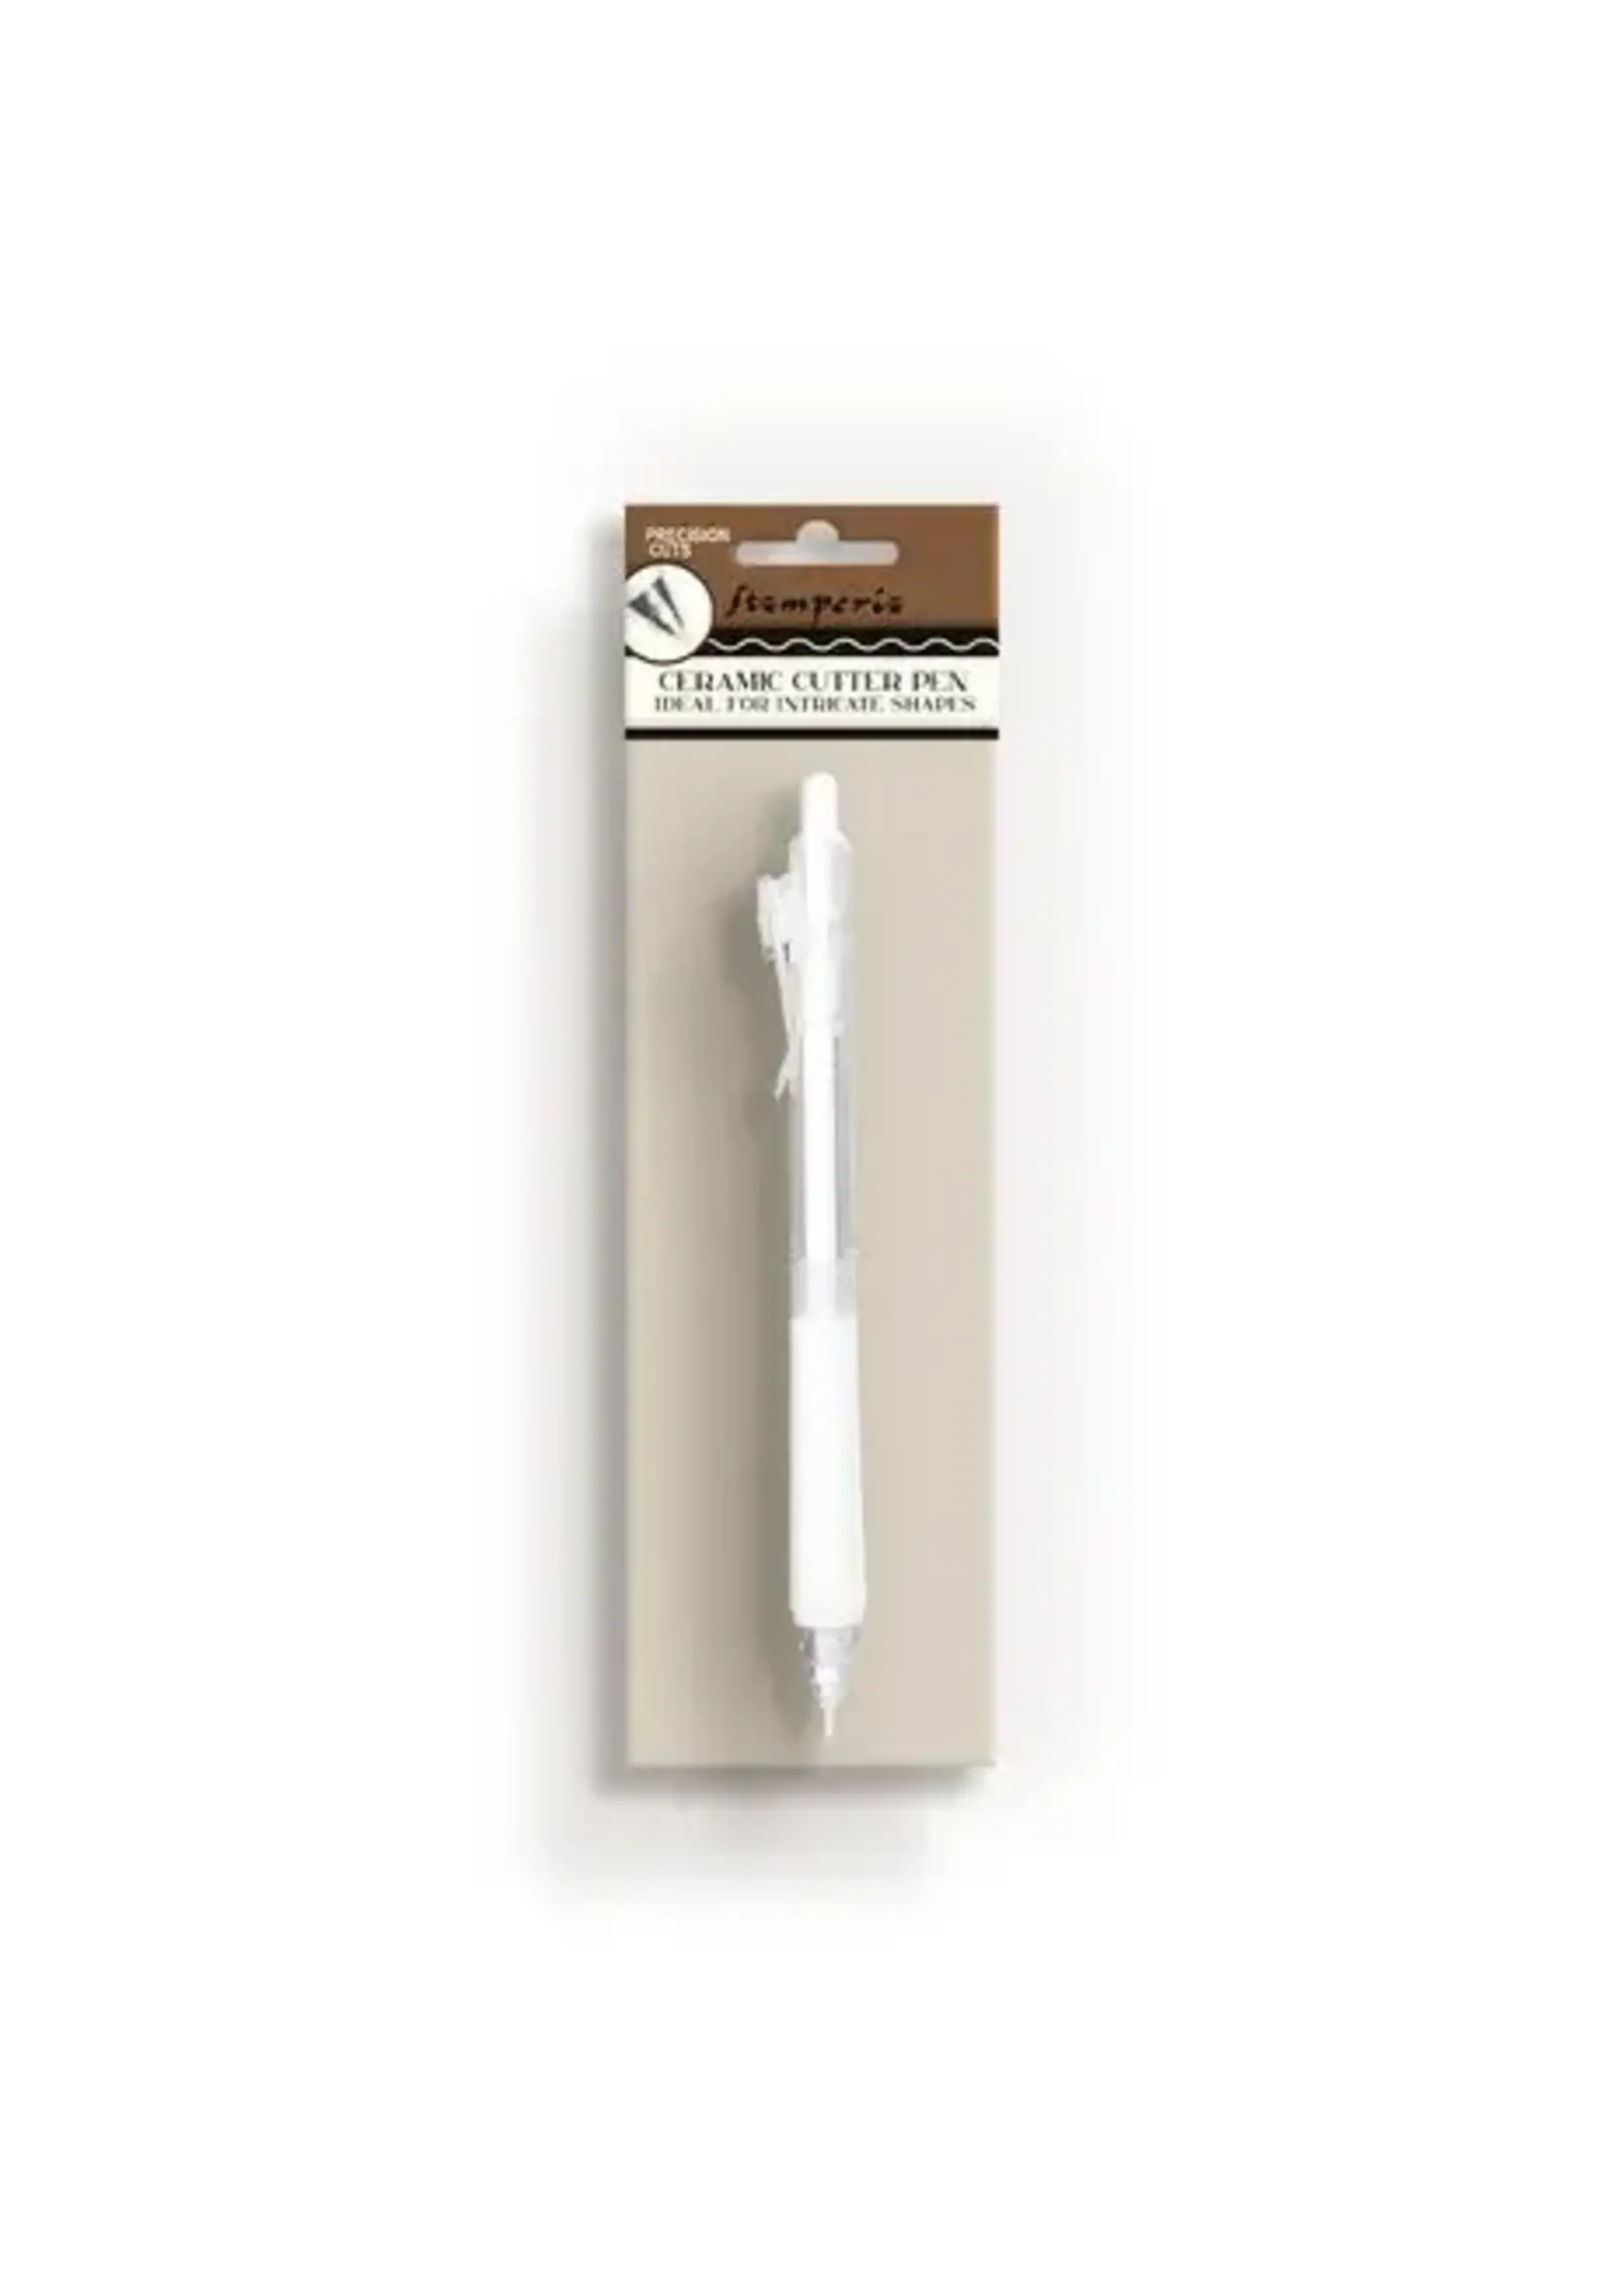 Stamperia Ceramic Cutter Pen (KRT17)